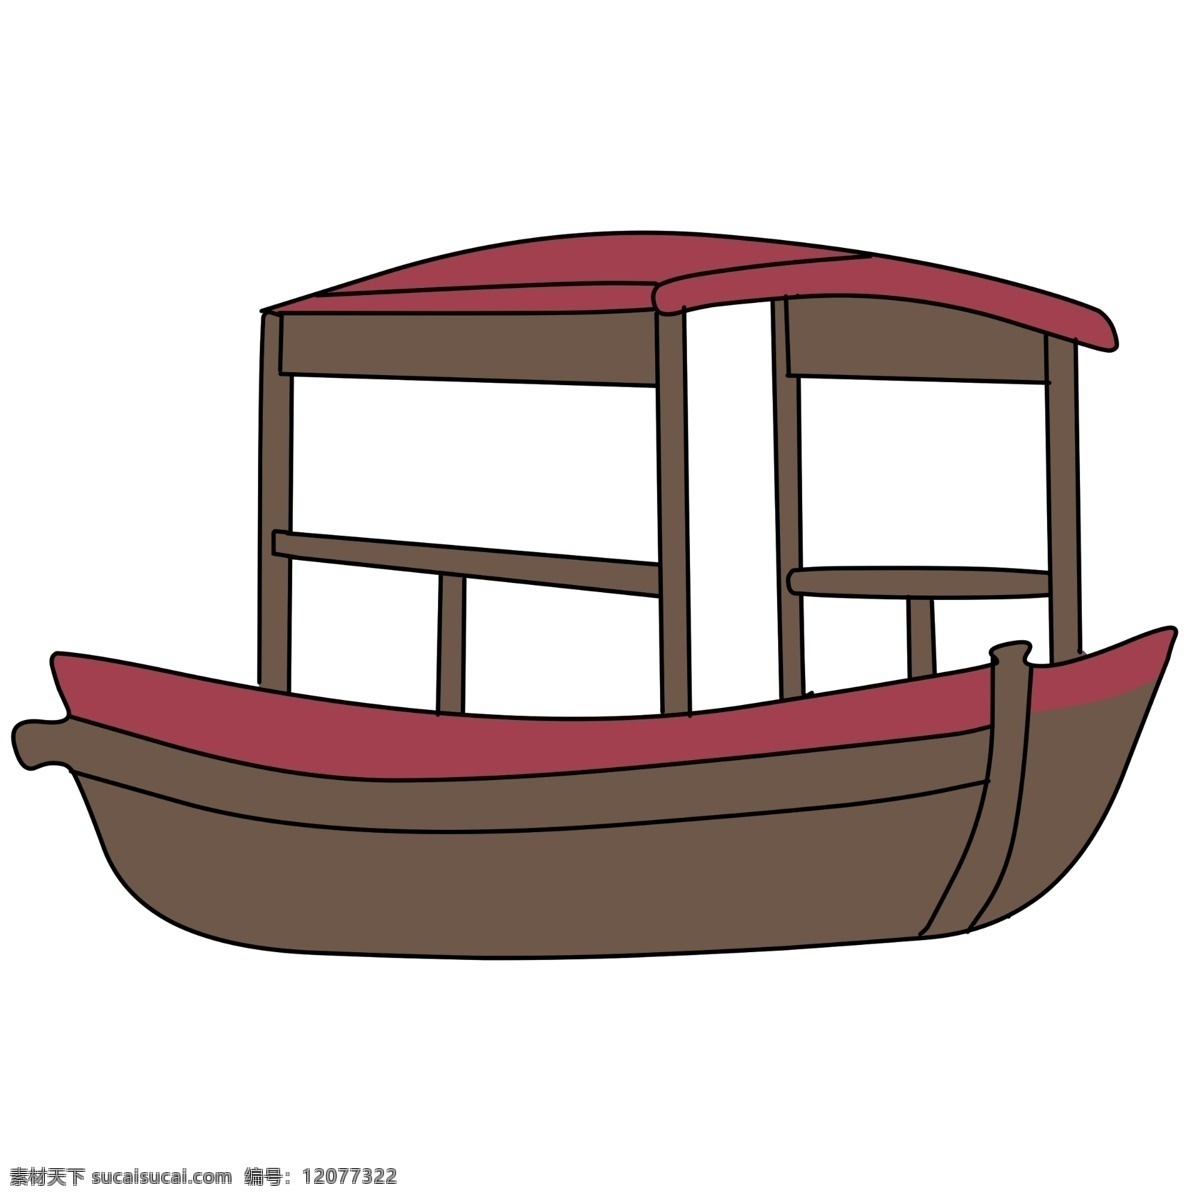 卡通 小船 交通工具 红色装饰小船 卡通小船 船只 一只小船 小木船 水上交通工具 插图